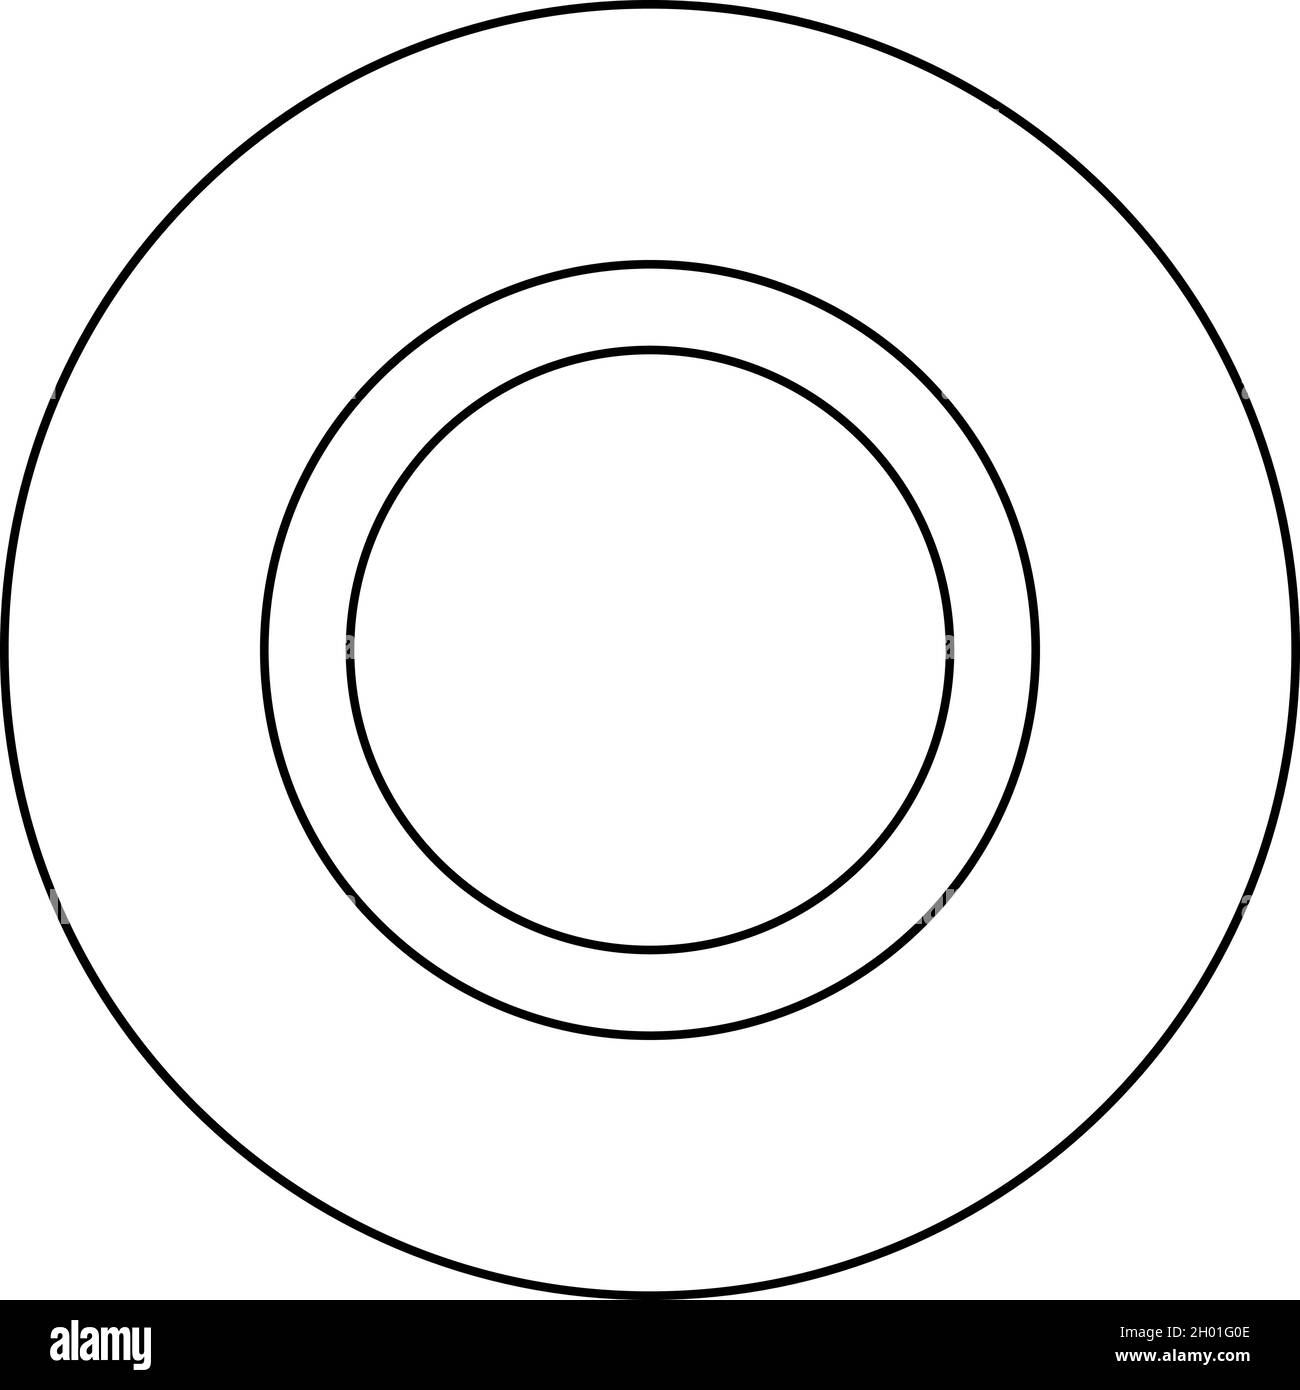 https://c8.alamy.com/compde/2h01g0e/gummidichtung-tulle-dichtung-leckage-o-ring-retten-symbol-im-kreis-rund-schwarz-farbe-vektor-illustration-solide-kontur-stil-einfaches-bild-2h01g0e.jpg